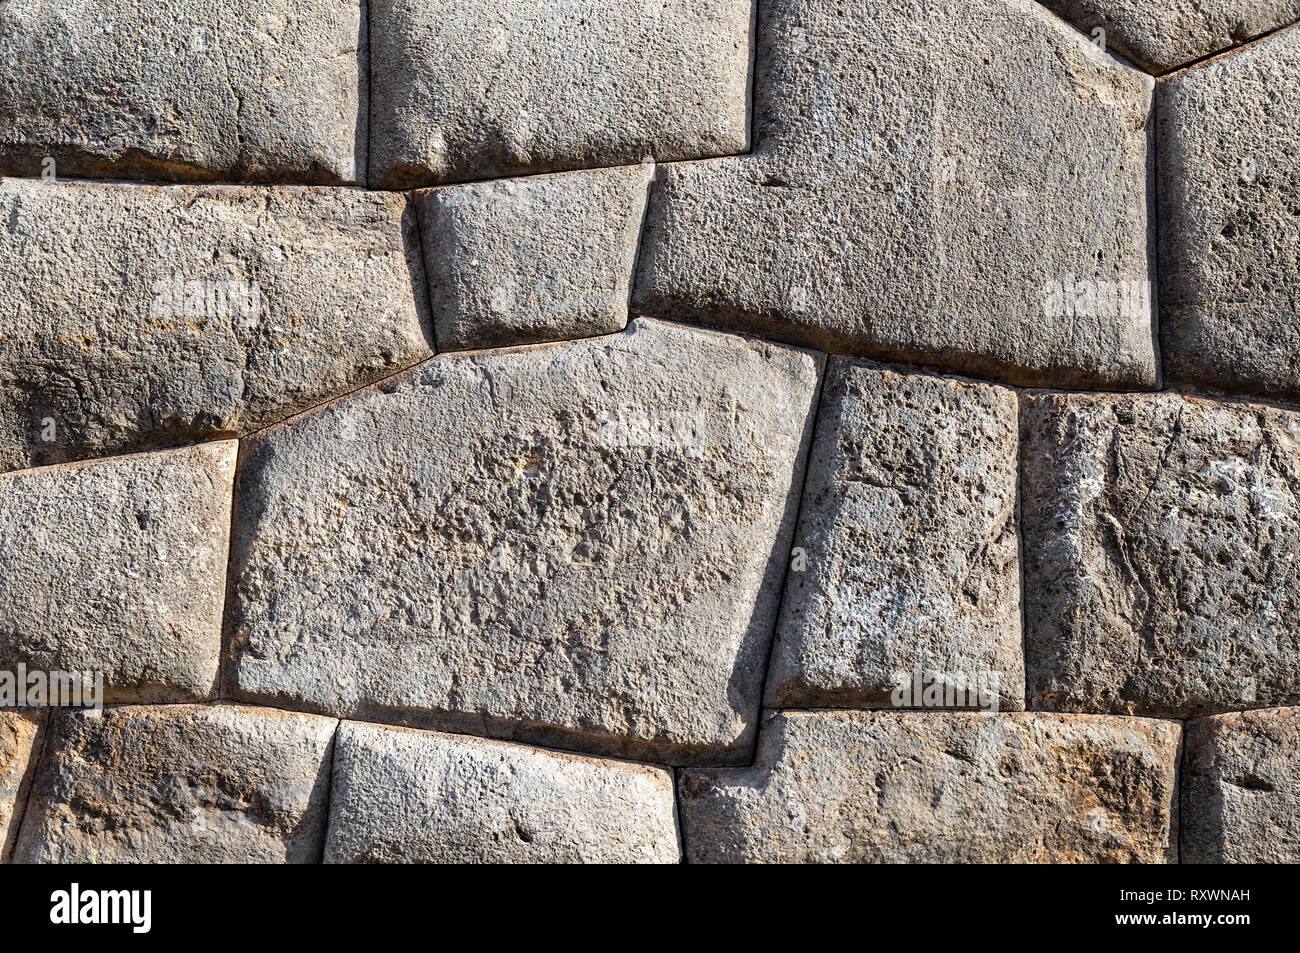 Les rochers de granit et les plus belles pierres Incas de la civilisation Inca avec un mur Inca dans les ruines archéologiques de Sacsayhuaman, Cusco, Pérou Ville. Banque D'Images